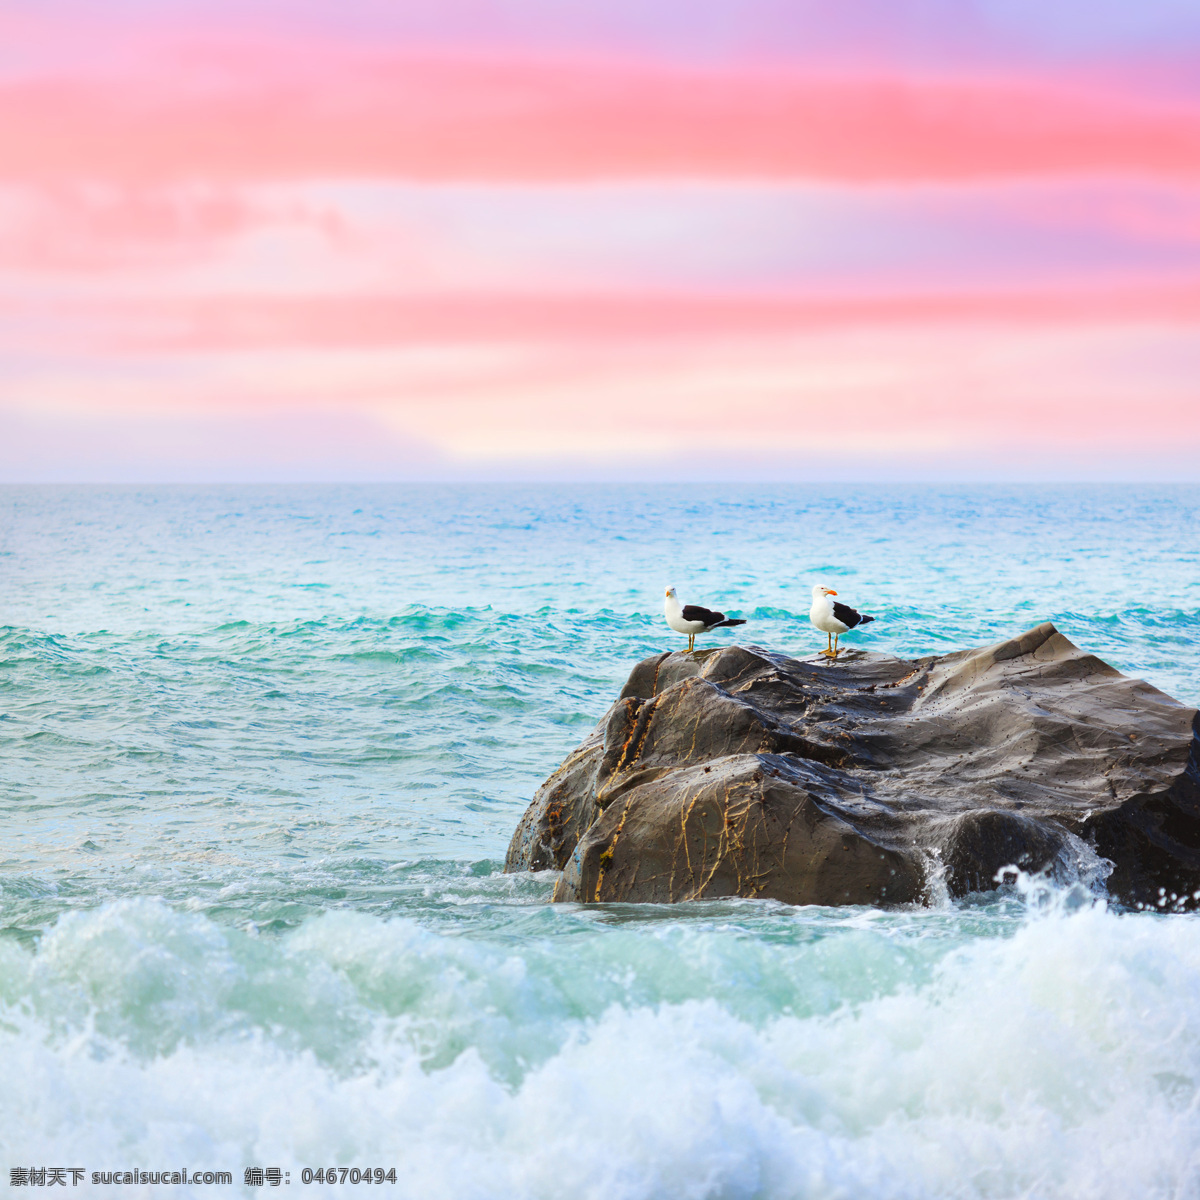 蓝 海里 礁石 上 小鸟 蓝海 波浪 柔和颜色搭配 自然景观 风景 海面风景 其他类别 生活百科